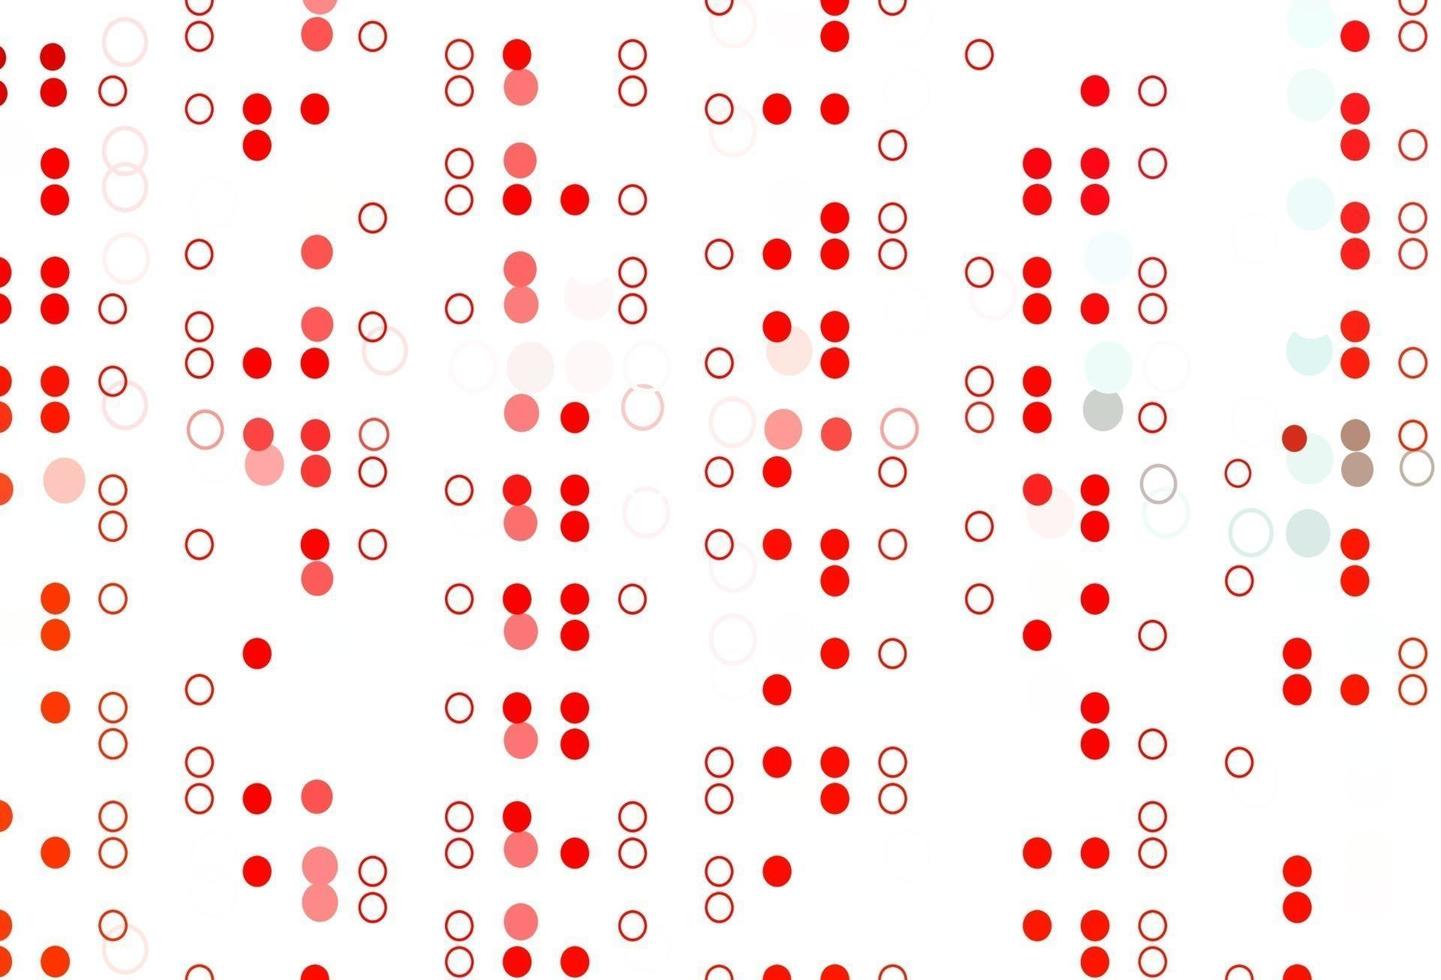 patrón de vector rojo claro con esferas.